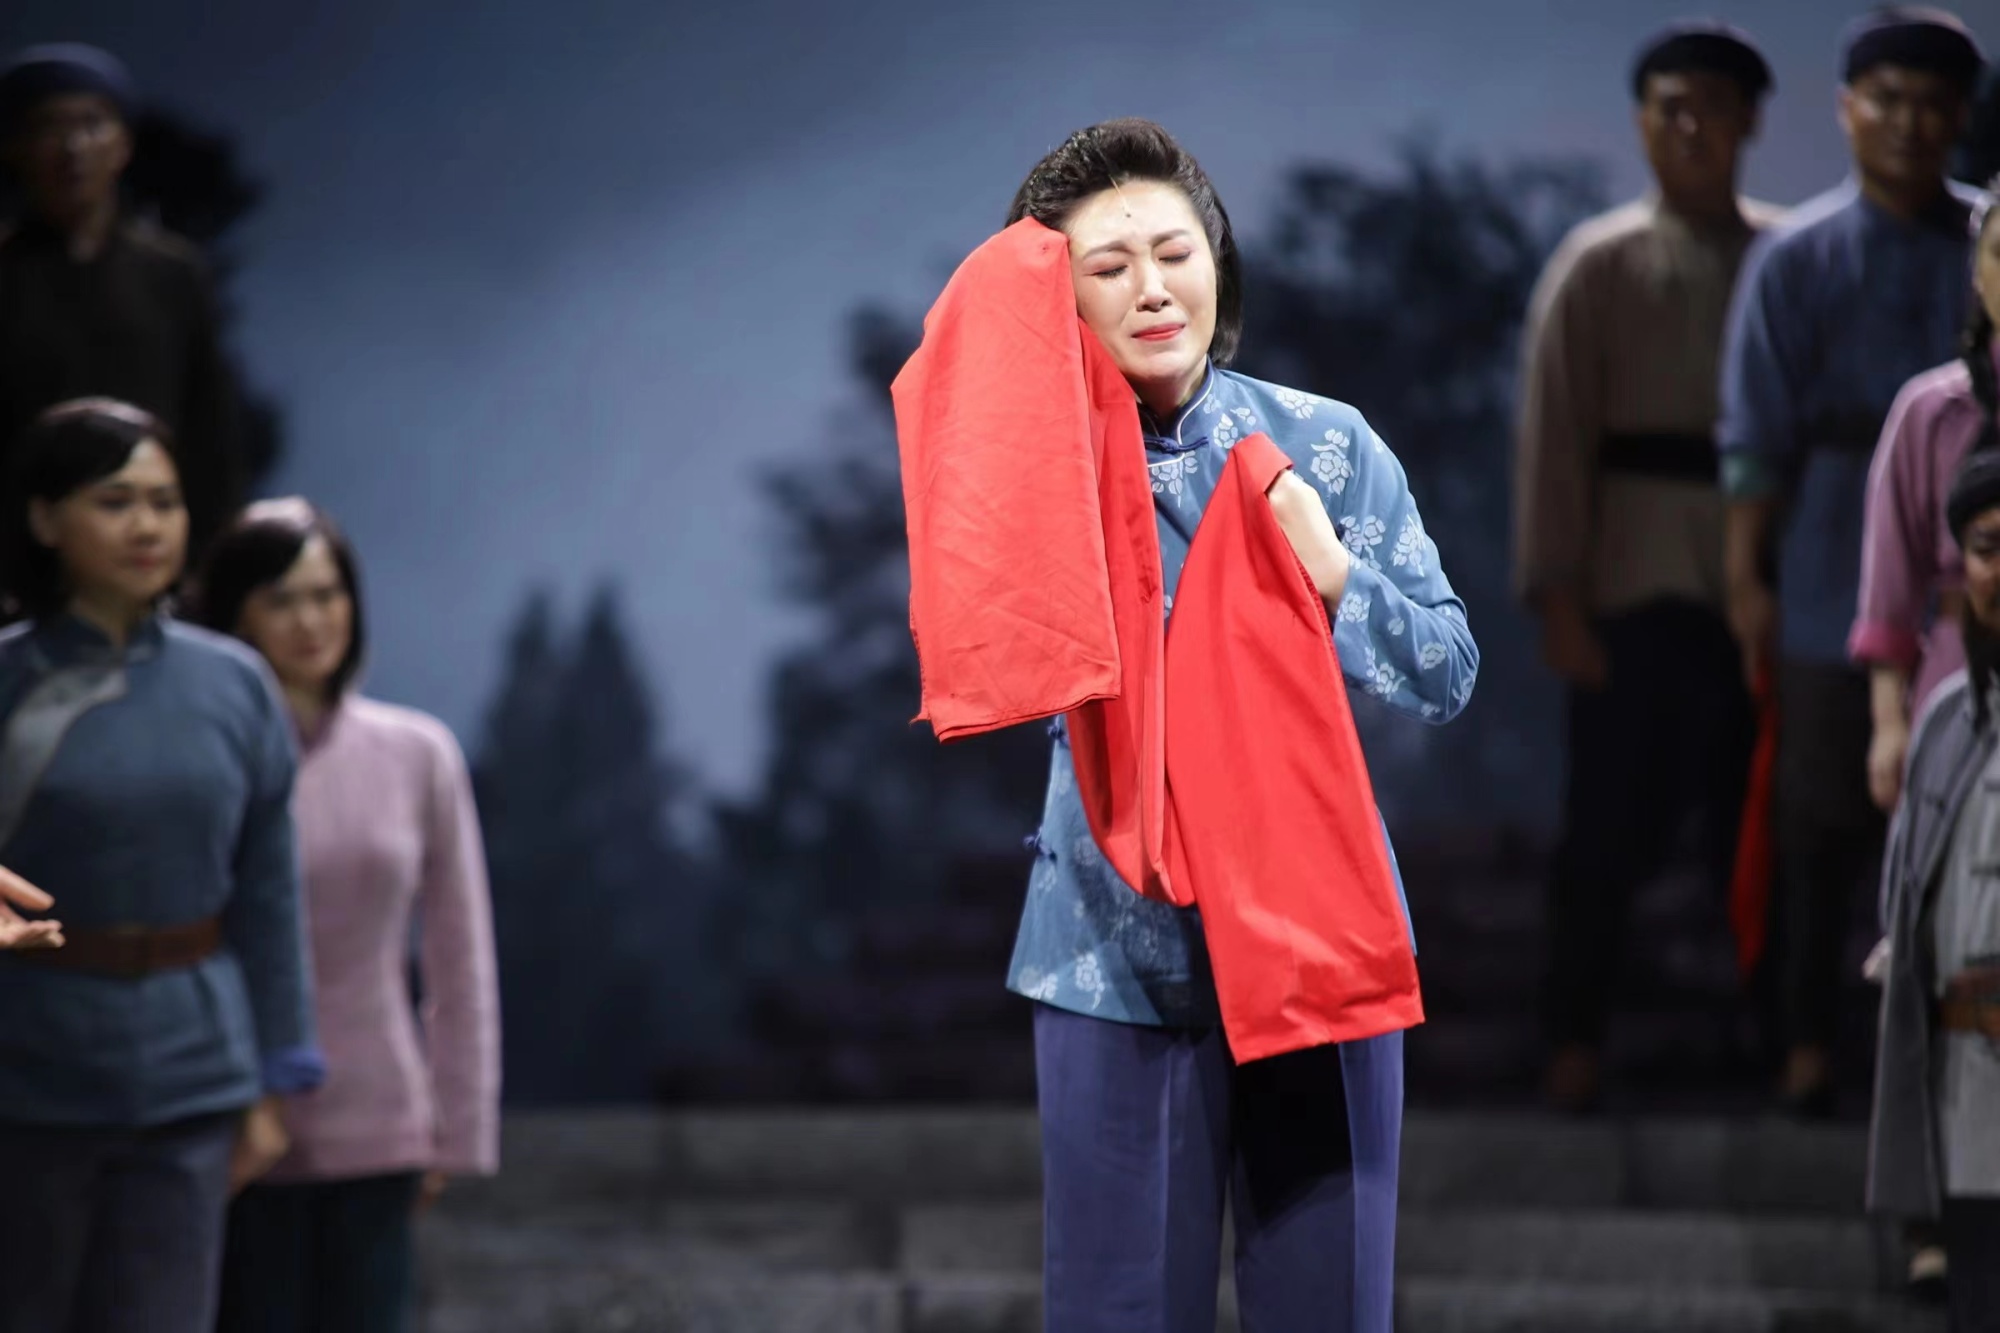 歌剧《江姐》在民族歌剧史上应该算得上丰碑式的作品,而中国民族歌剧